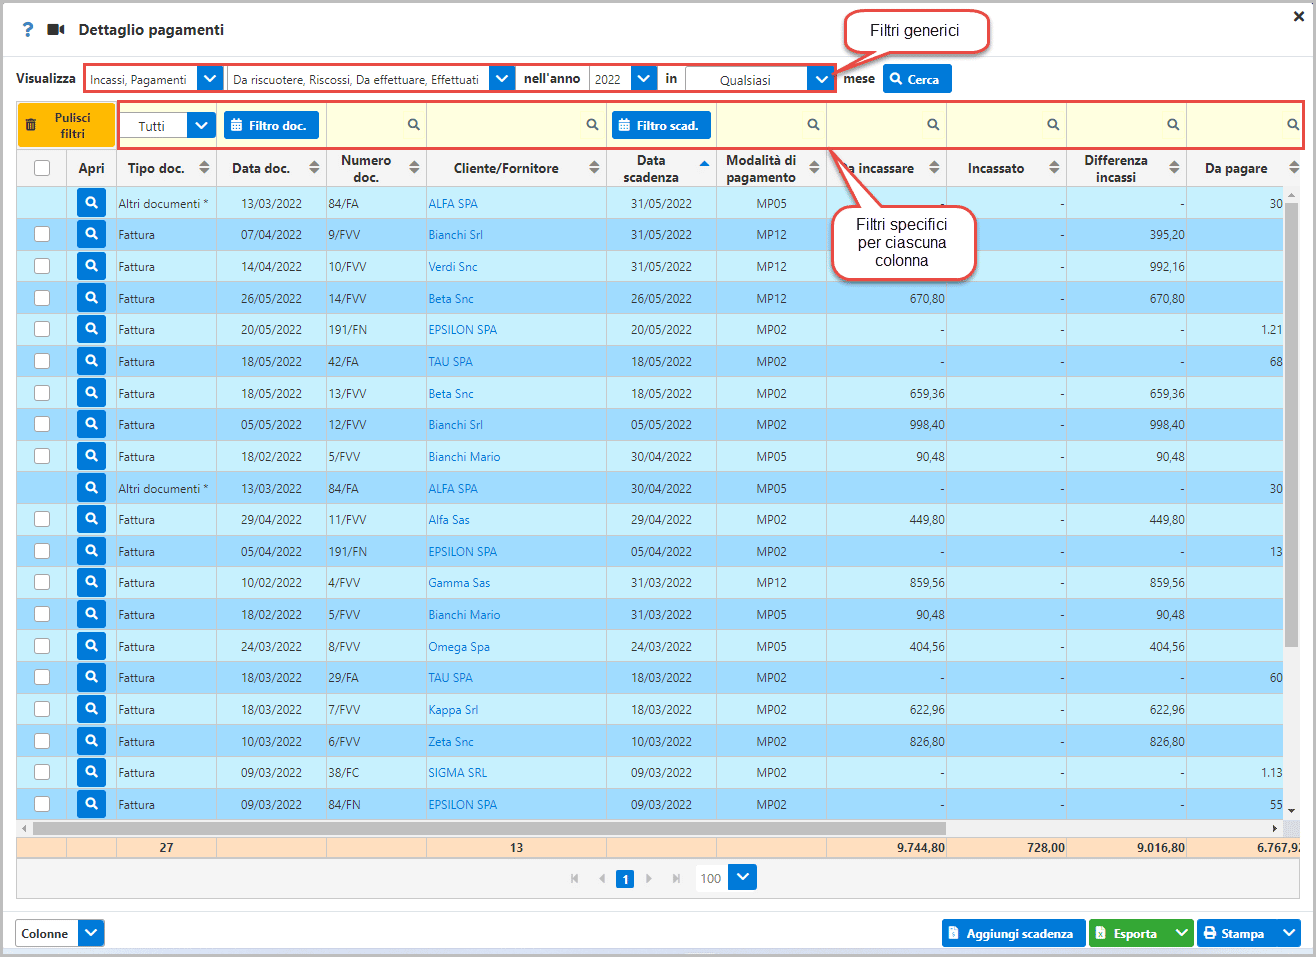 filtri in dettaglio pagamenti (filtri generici e filtri specifici)